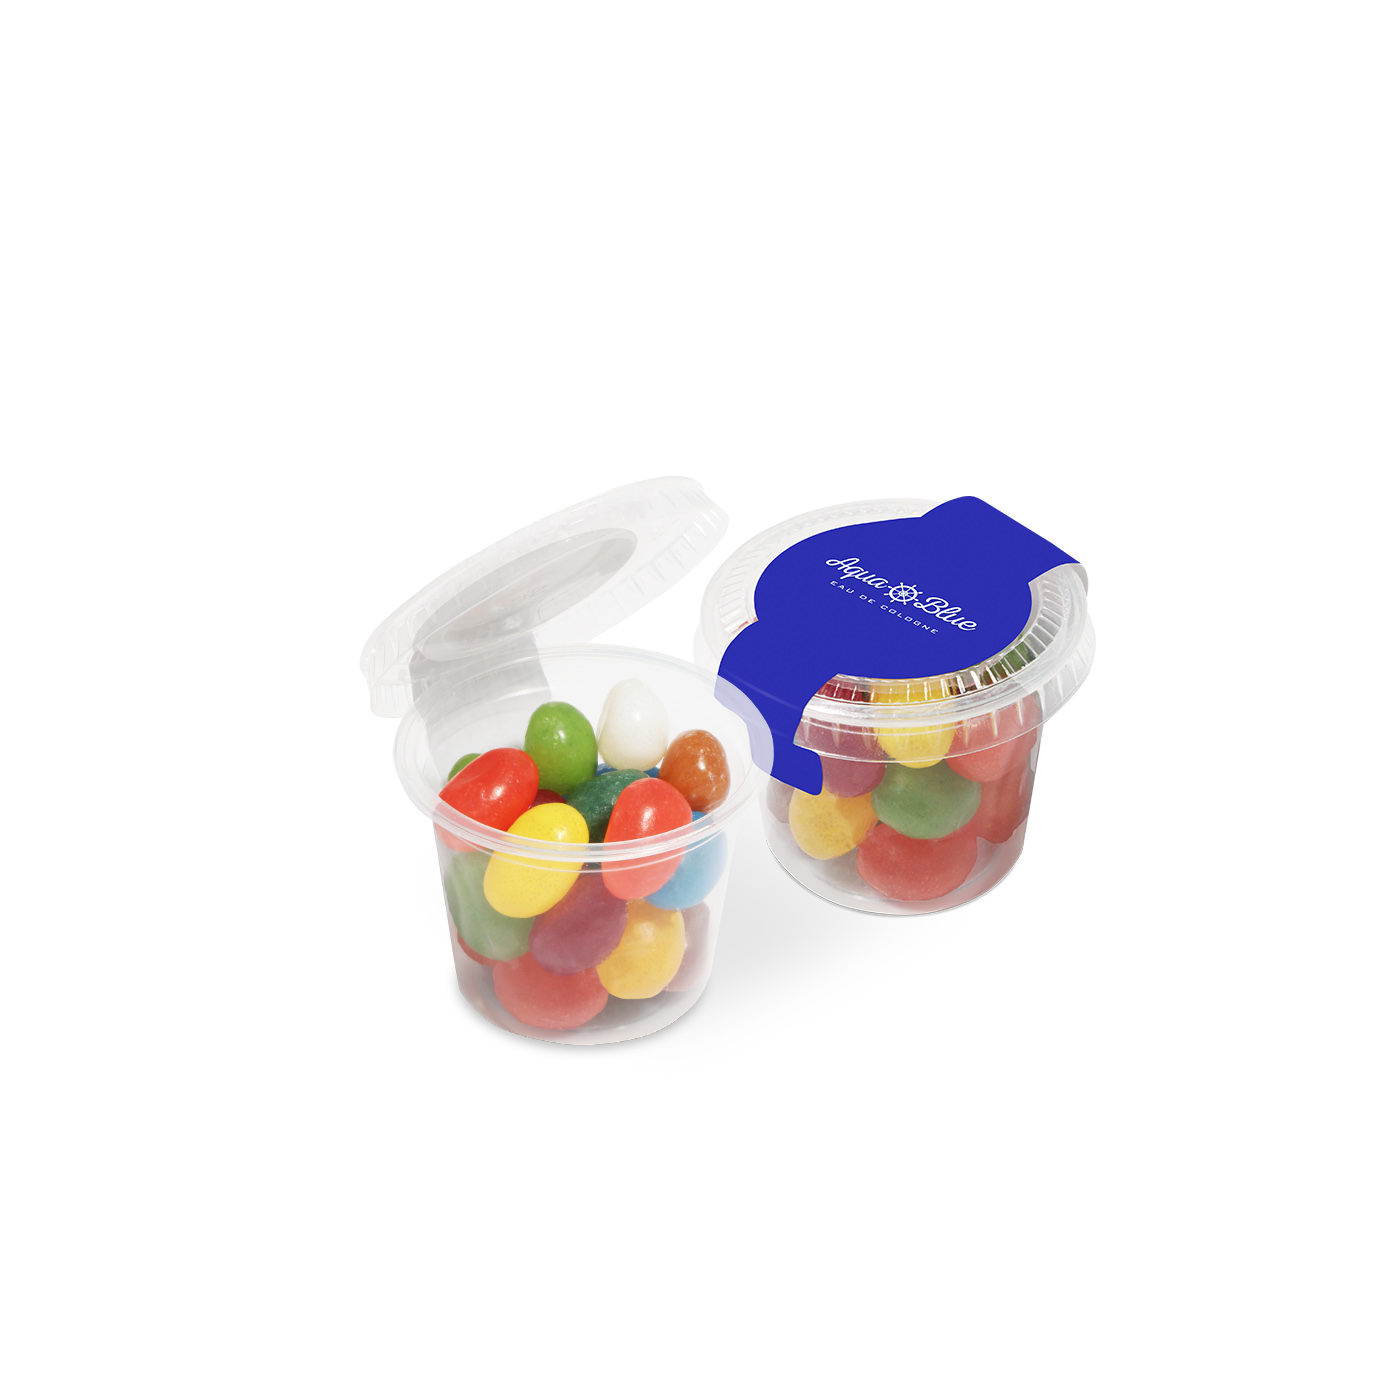 Eco Range Eco Mini Pot Jelly Bean Factory